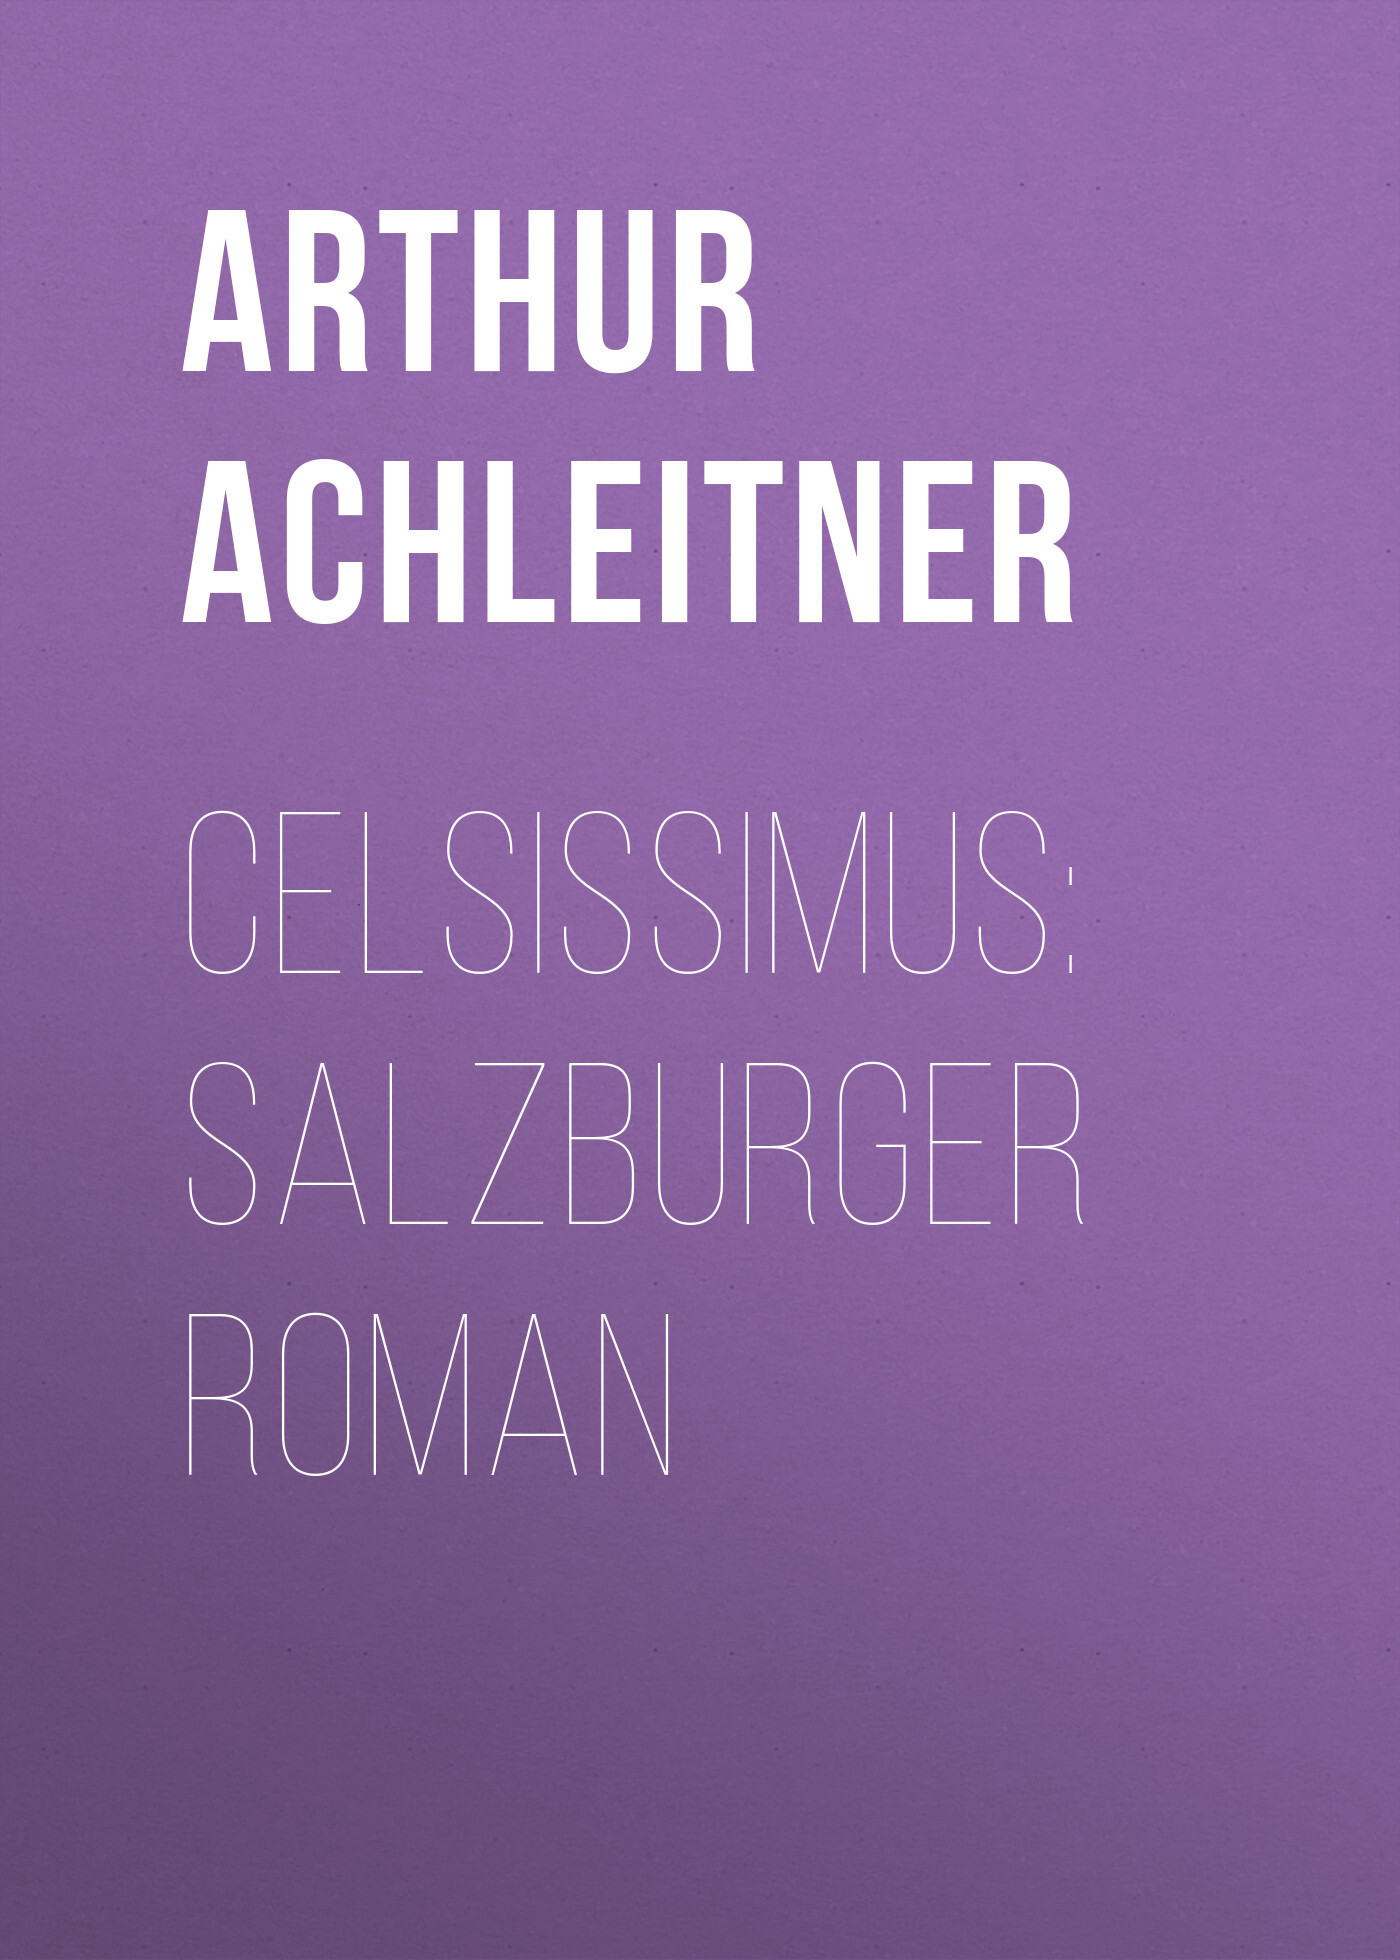 Книга Celsissimus: Salzburger Roman из серии , созданная Arthur Achleitner, может относится к жанру Зарубежная классика, Зарубежная старинная литература. Стоимость электронной книги Celsissimus: Salzburger Roman с идентификатором 36366774 составляет 0 руб.